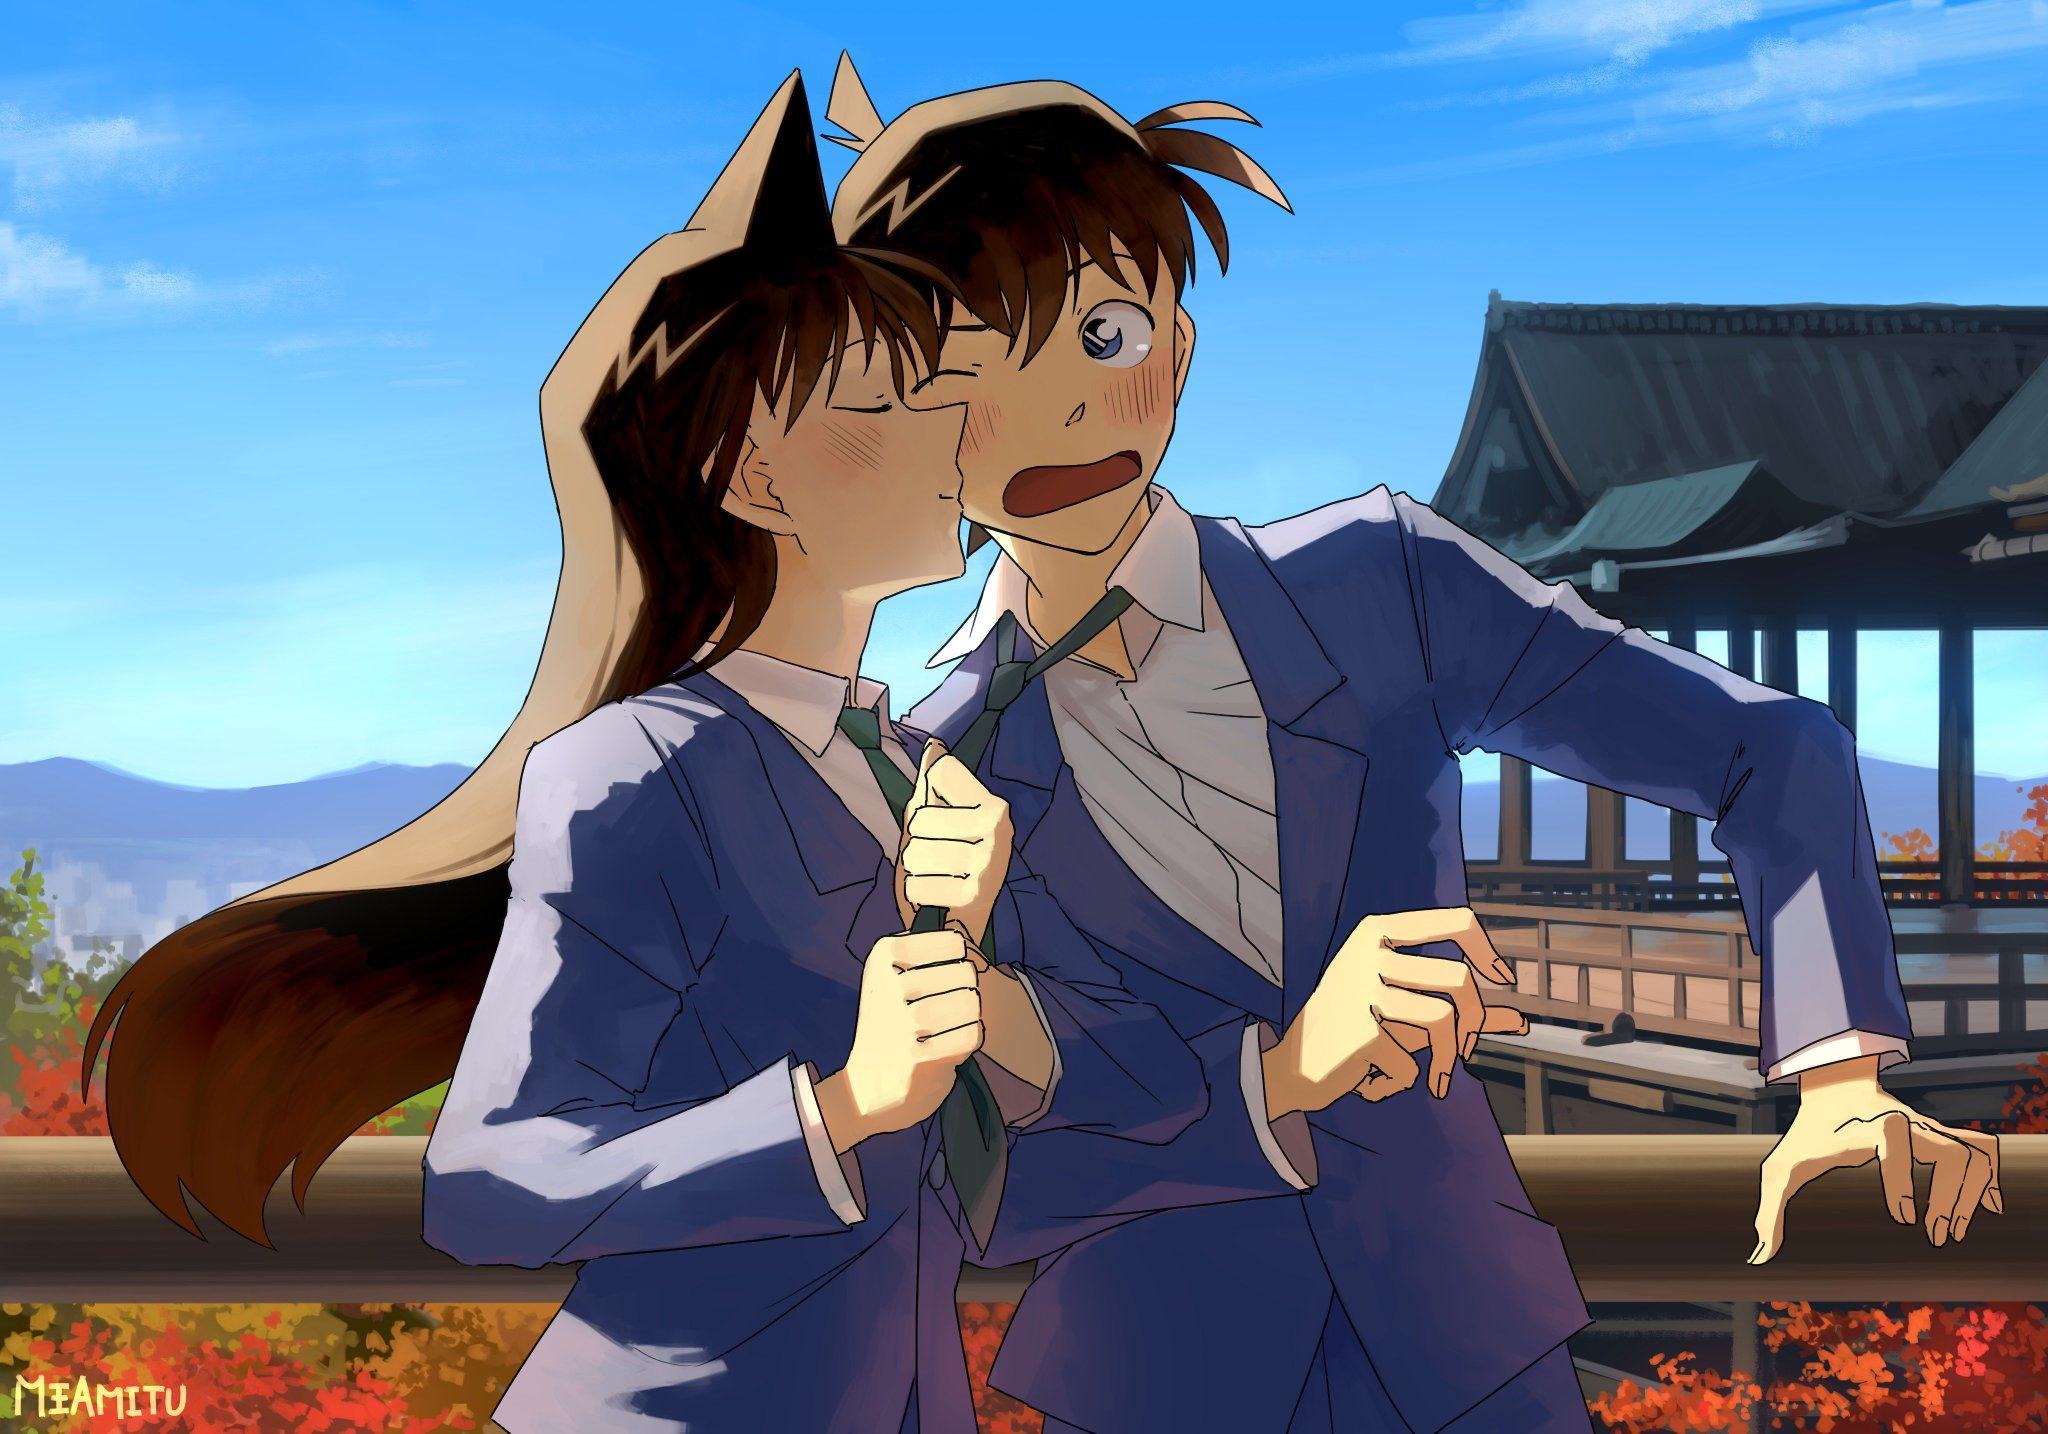 Hình ảnh Shinichi và Ran hôn nhau dễ thương ngộ nghĩnh